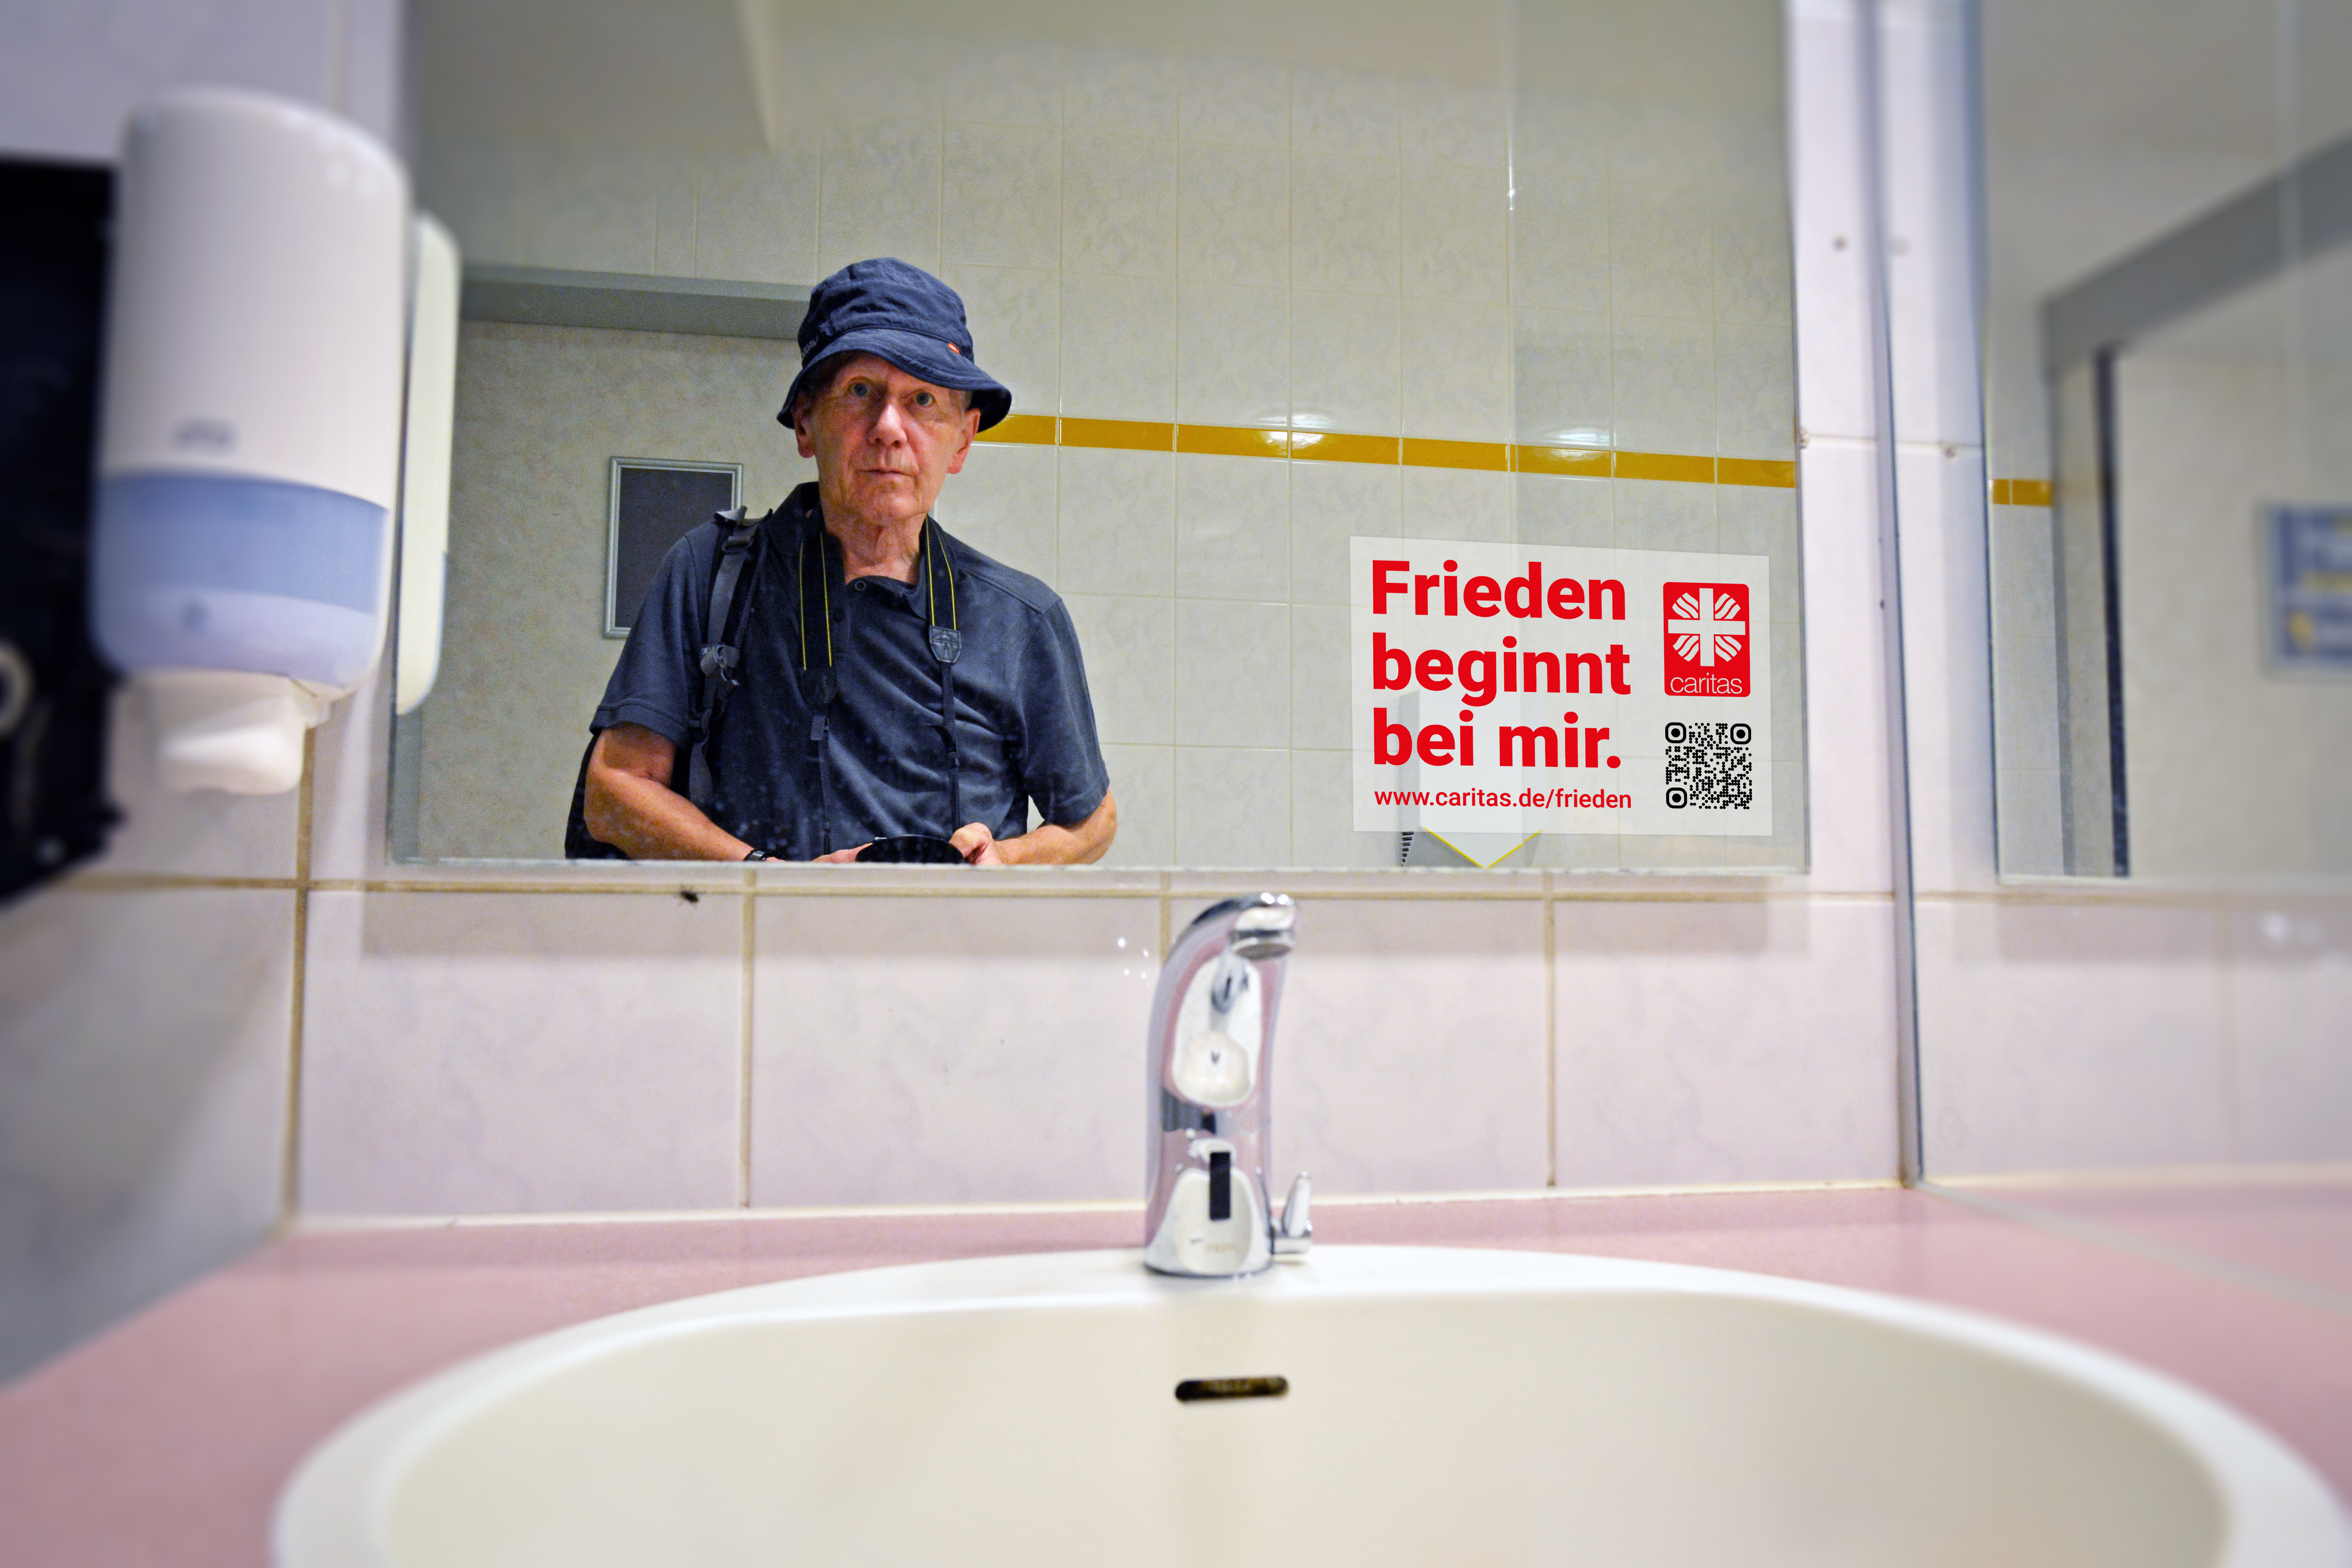 männerportrait in öffentlicher toilette